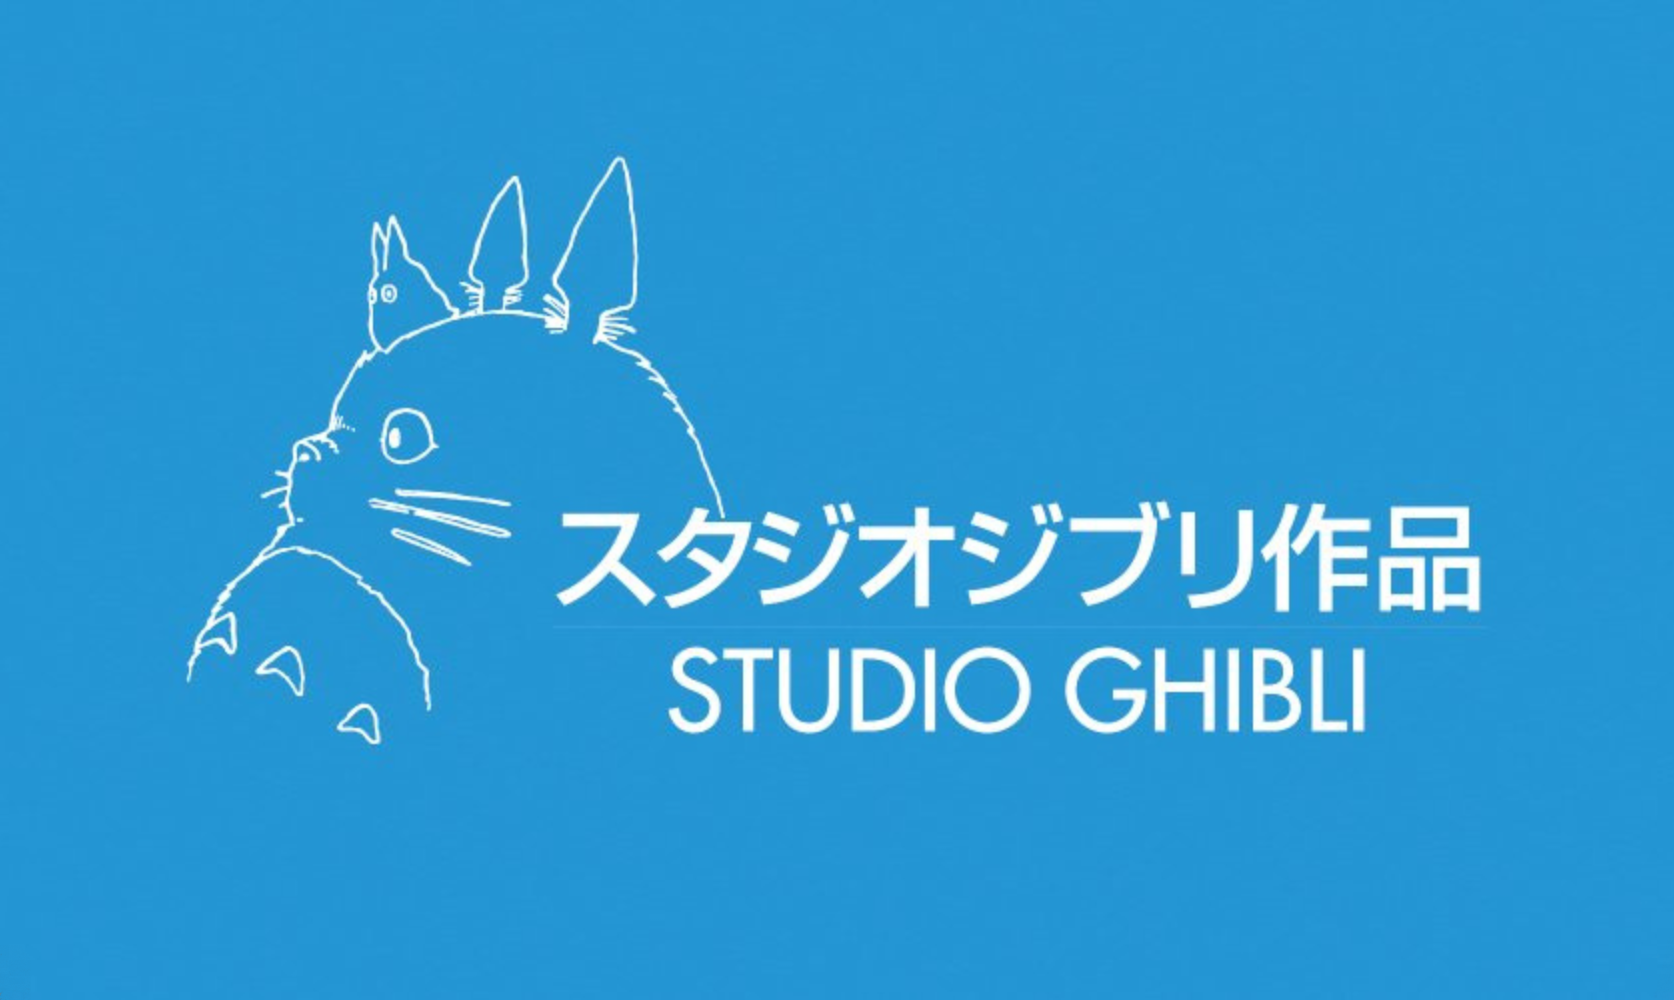 Studio Ghibli lanza último filme: How do you live? de Hayao Miyazaki